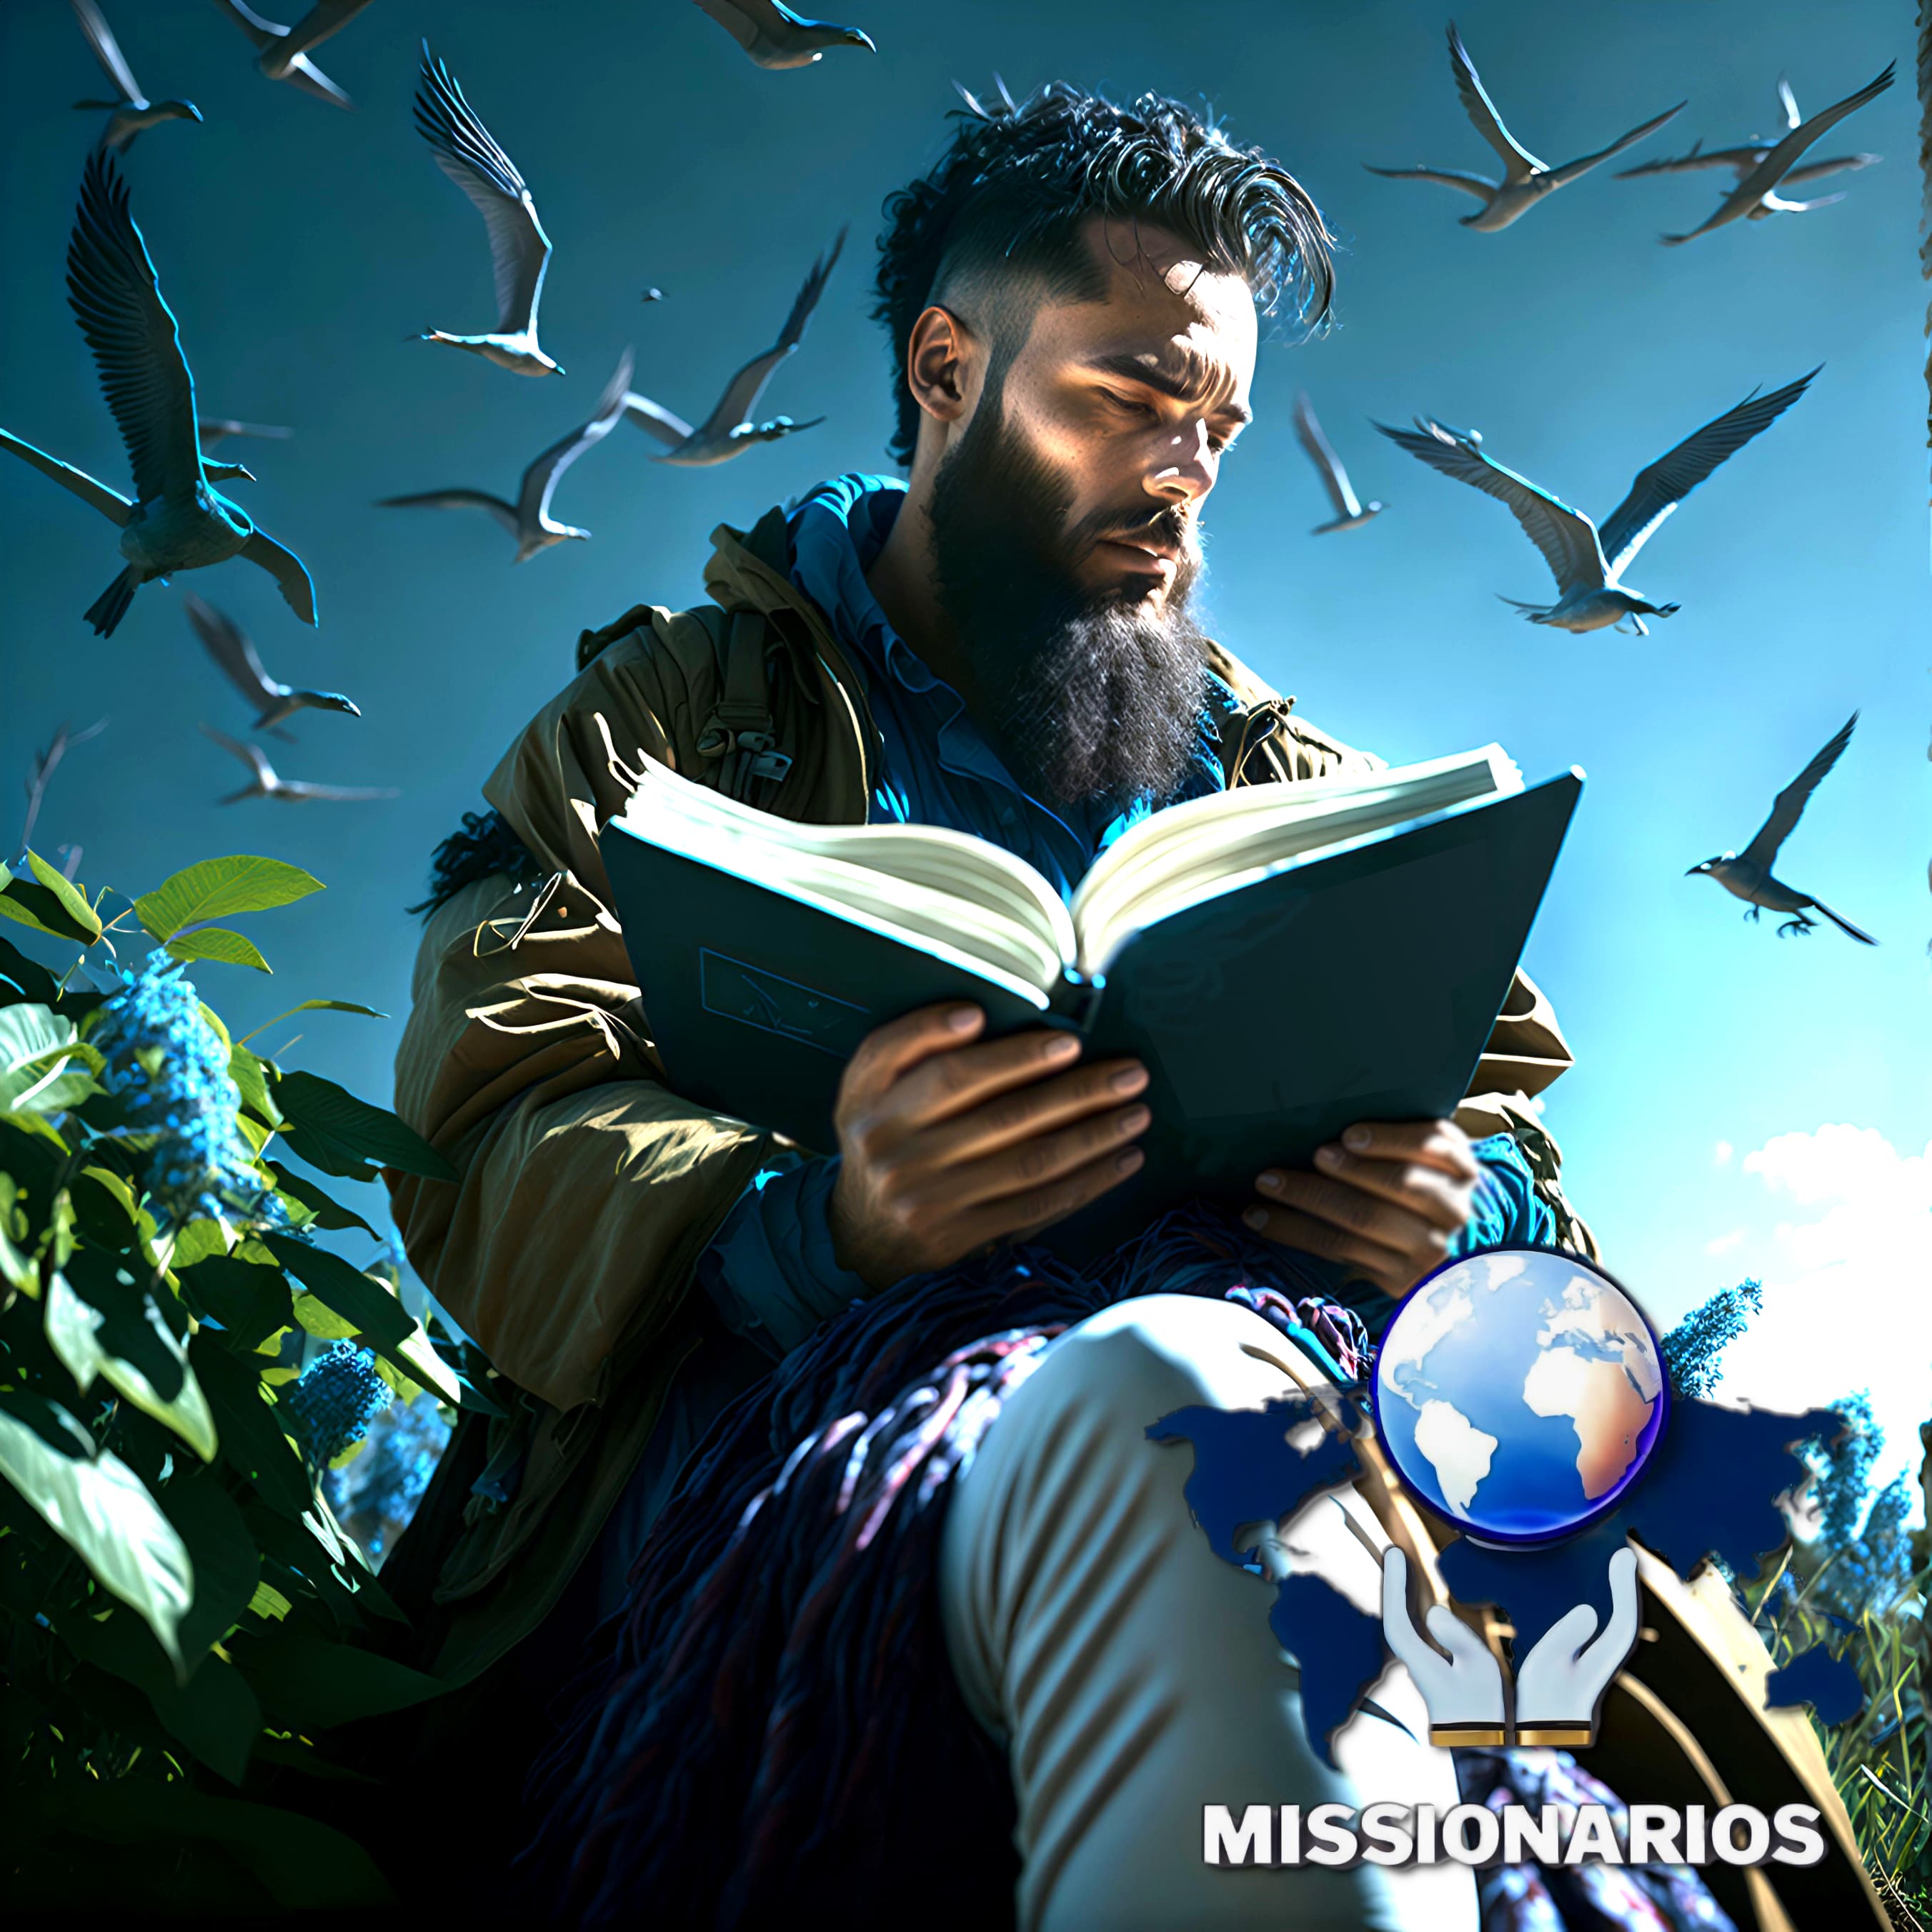 A imagem mostra um homem adulto, com barbas longas, sentado ao ar livre em meio a natureza, rodeado de pássaros, com a bíblia na mão estudando o livro dos salmos.